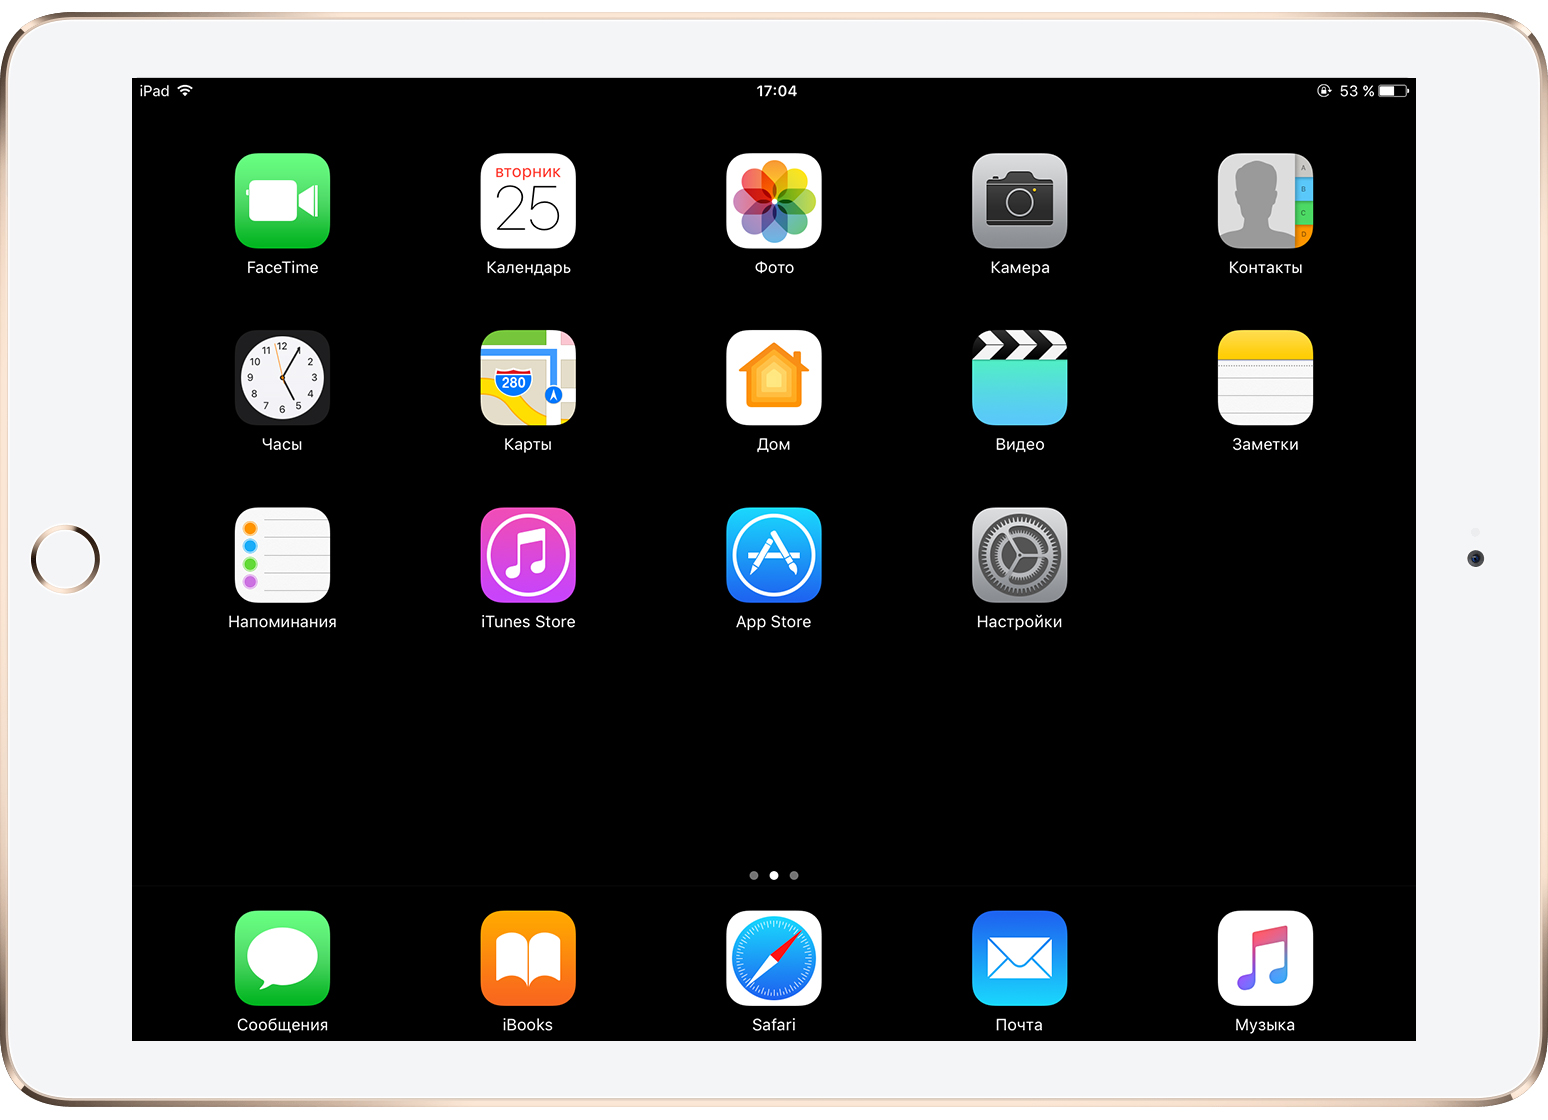 Заждались темную тему оформления iOS 10? Это решение поможет скоротать ожидание